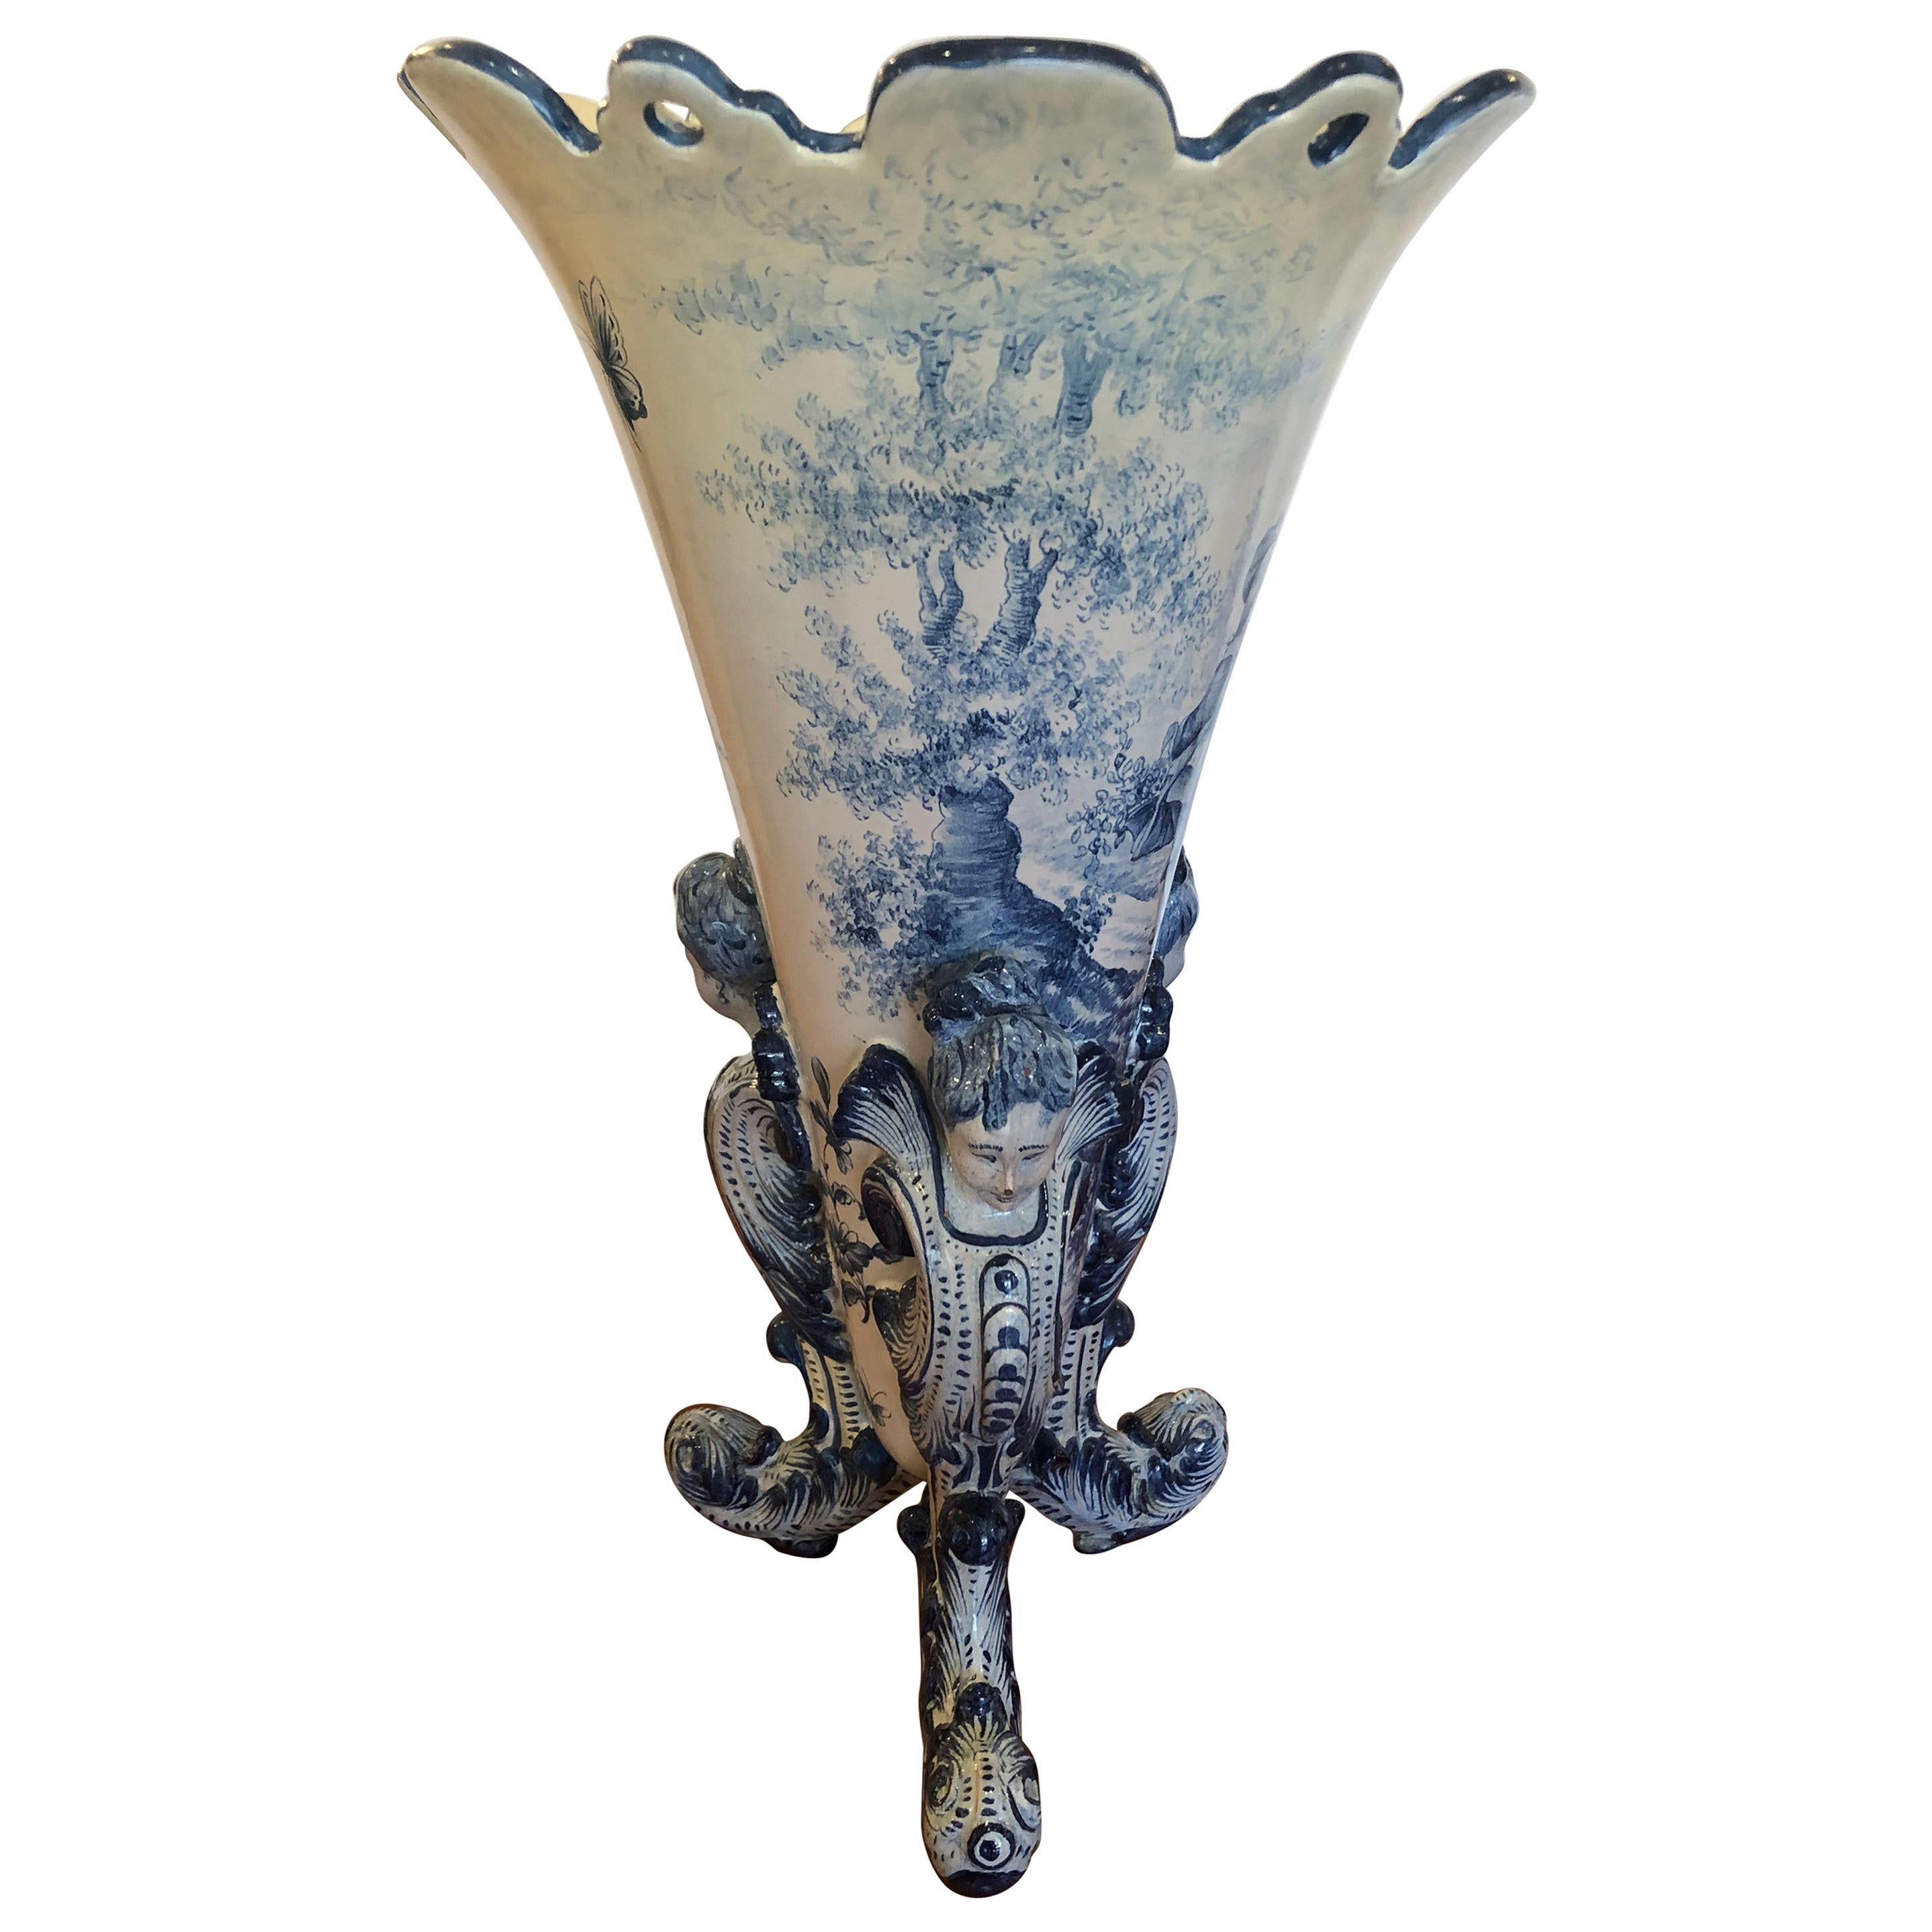 Magnifique grand vase figuratif italien ancien en céramique bleue et blanche